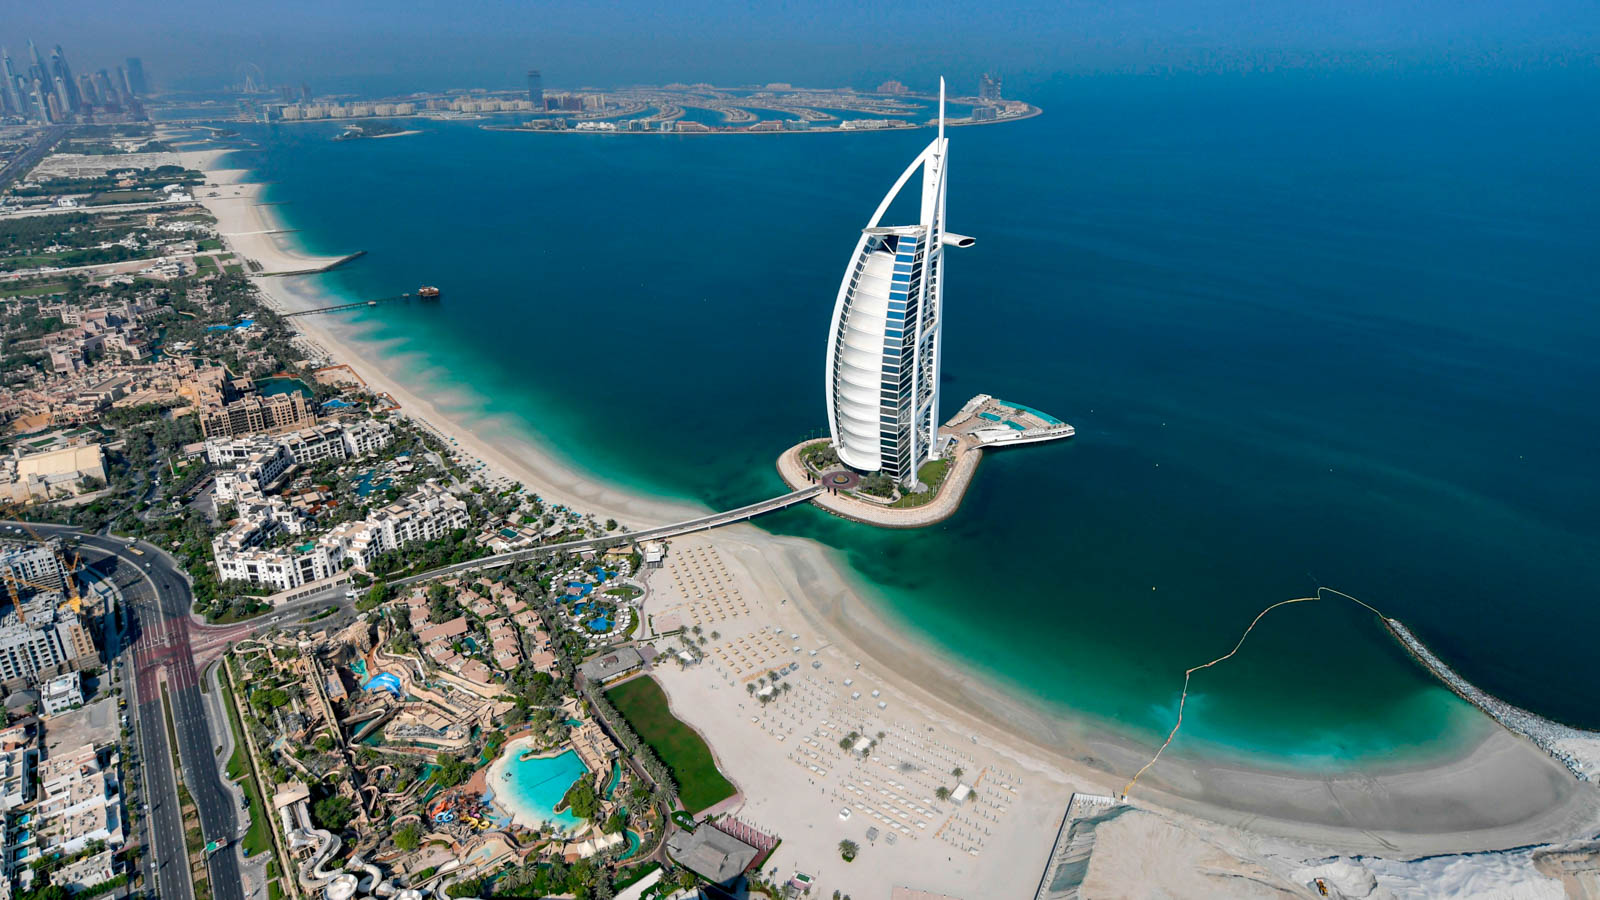 Tour Du Lịch Khám Phá Thành Phố Sa Mạc Dubai – Abu Dhabi 5 Ngày 4 Đêm